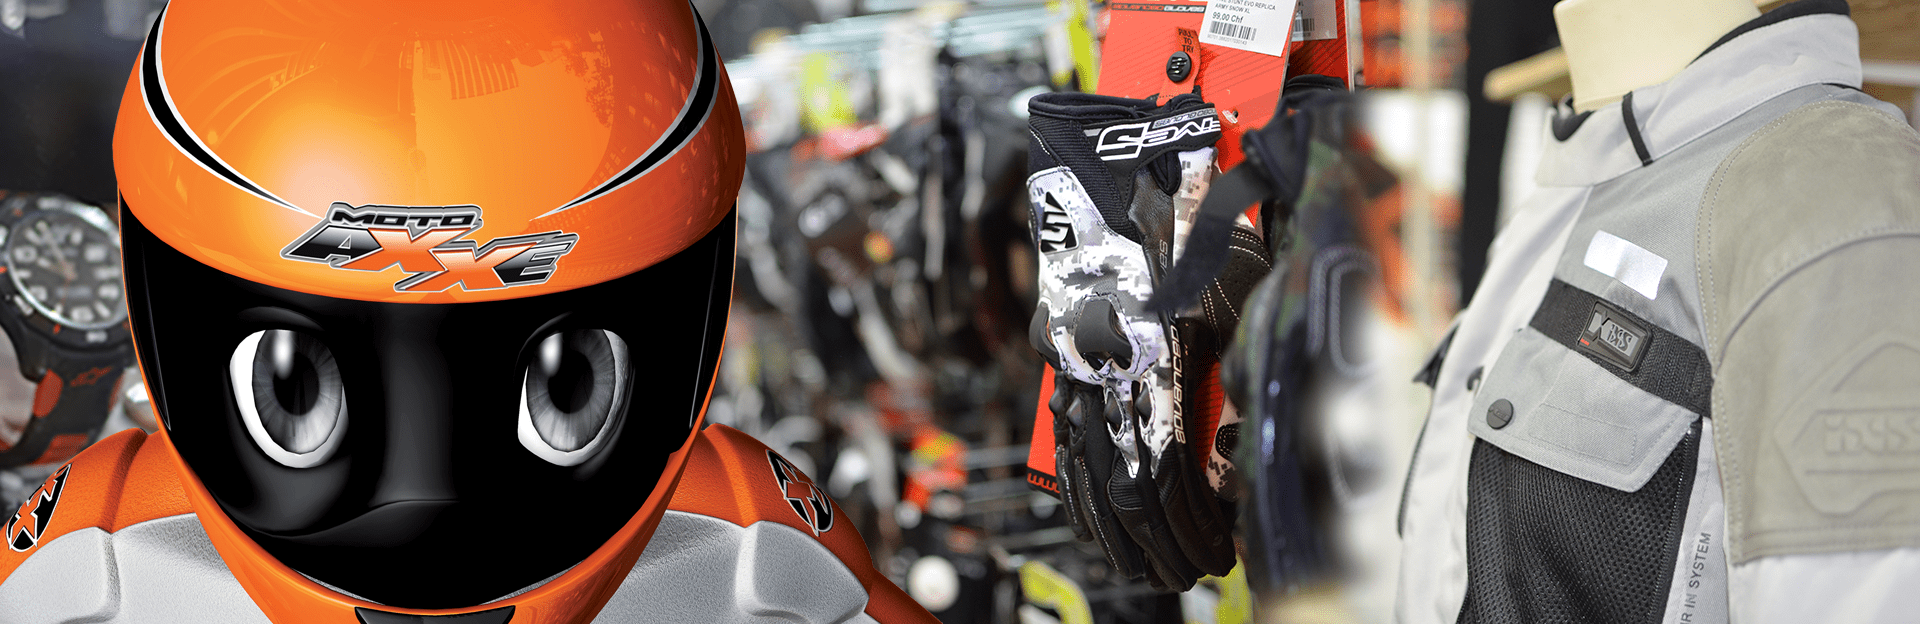 Magasin de vente d'équipement motard(e) en Suisse.Casques, blousons cuir et  textile, gants, bottes, pneus, batteries, entretien